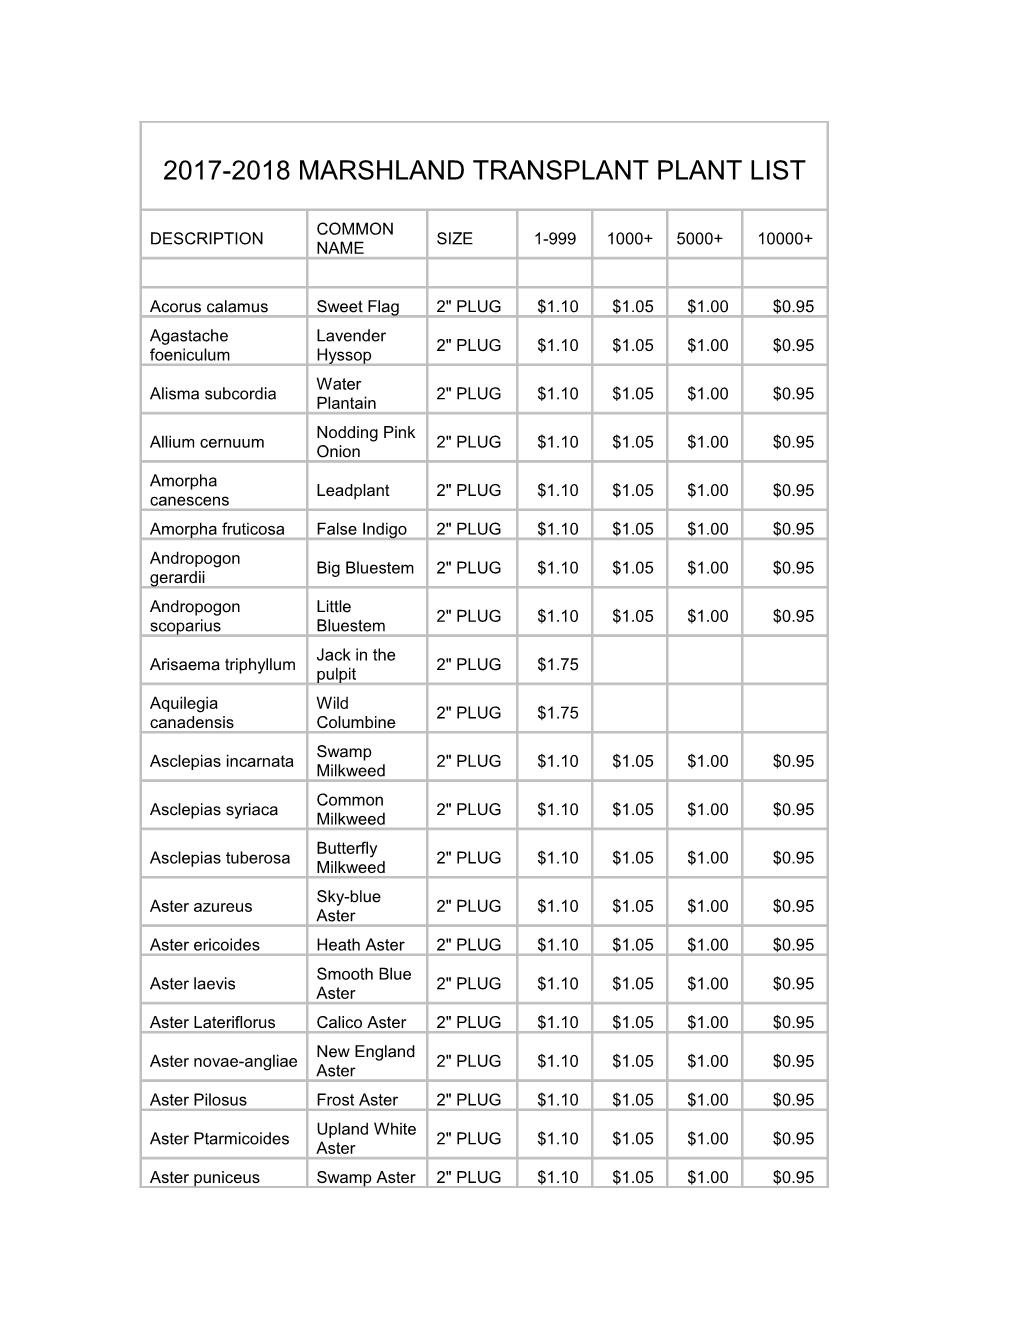 2009 Marshland Transplant Plant List